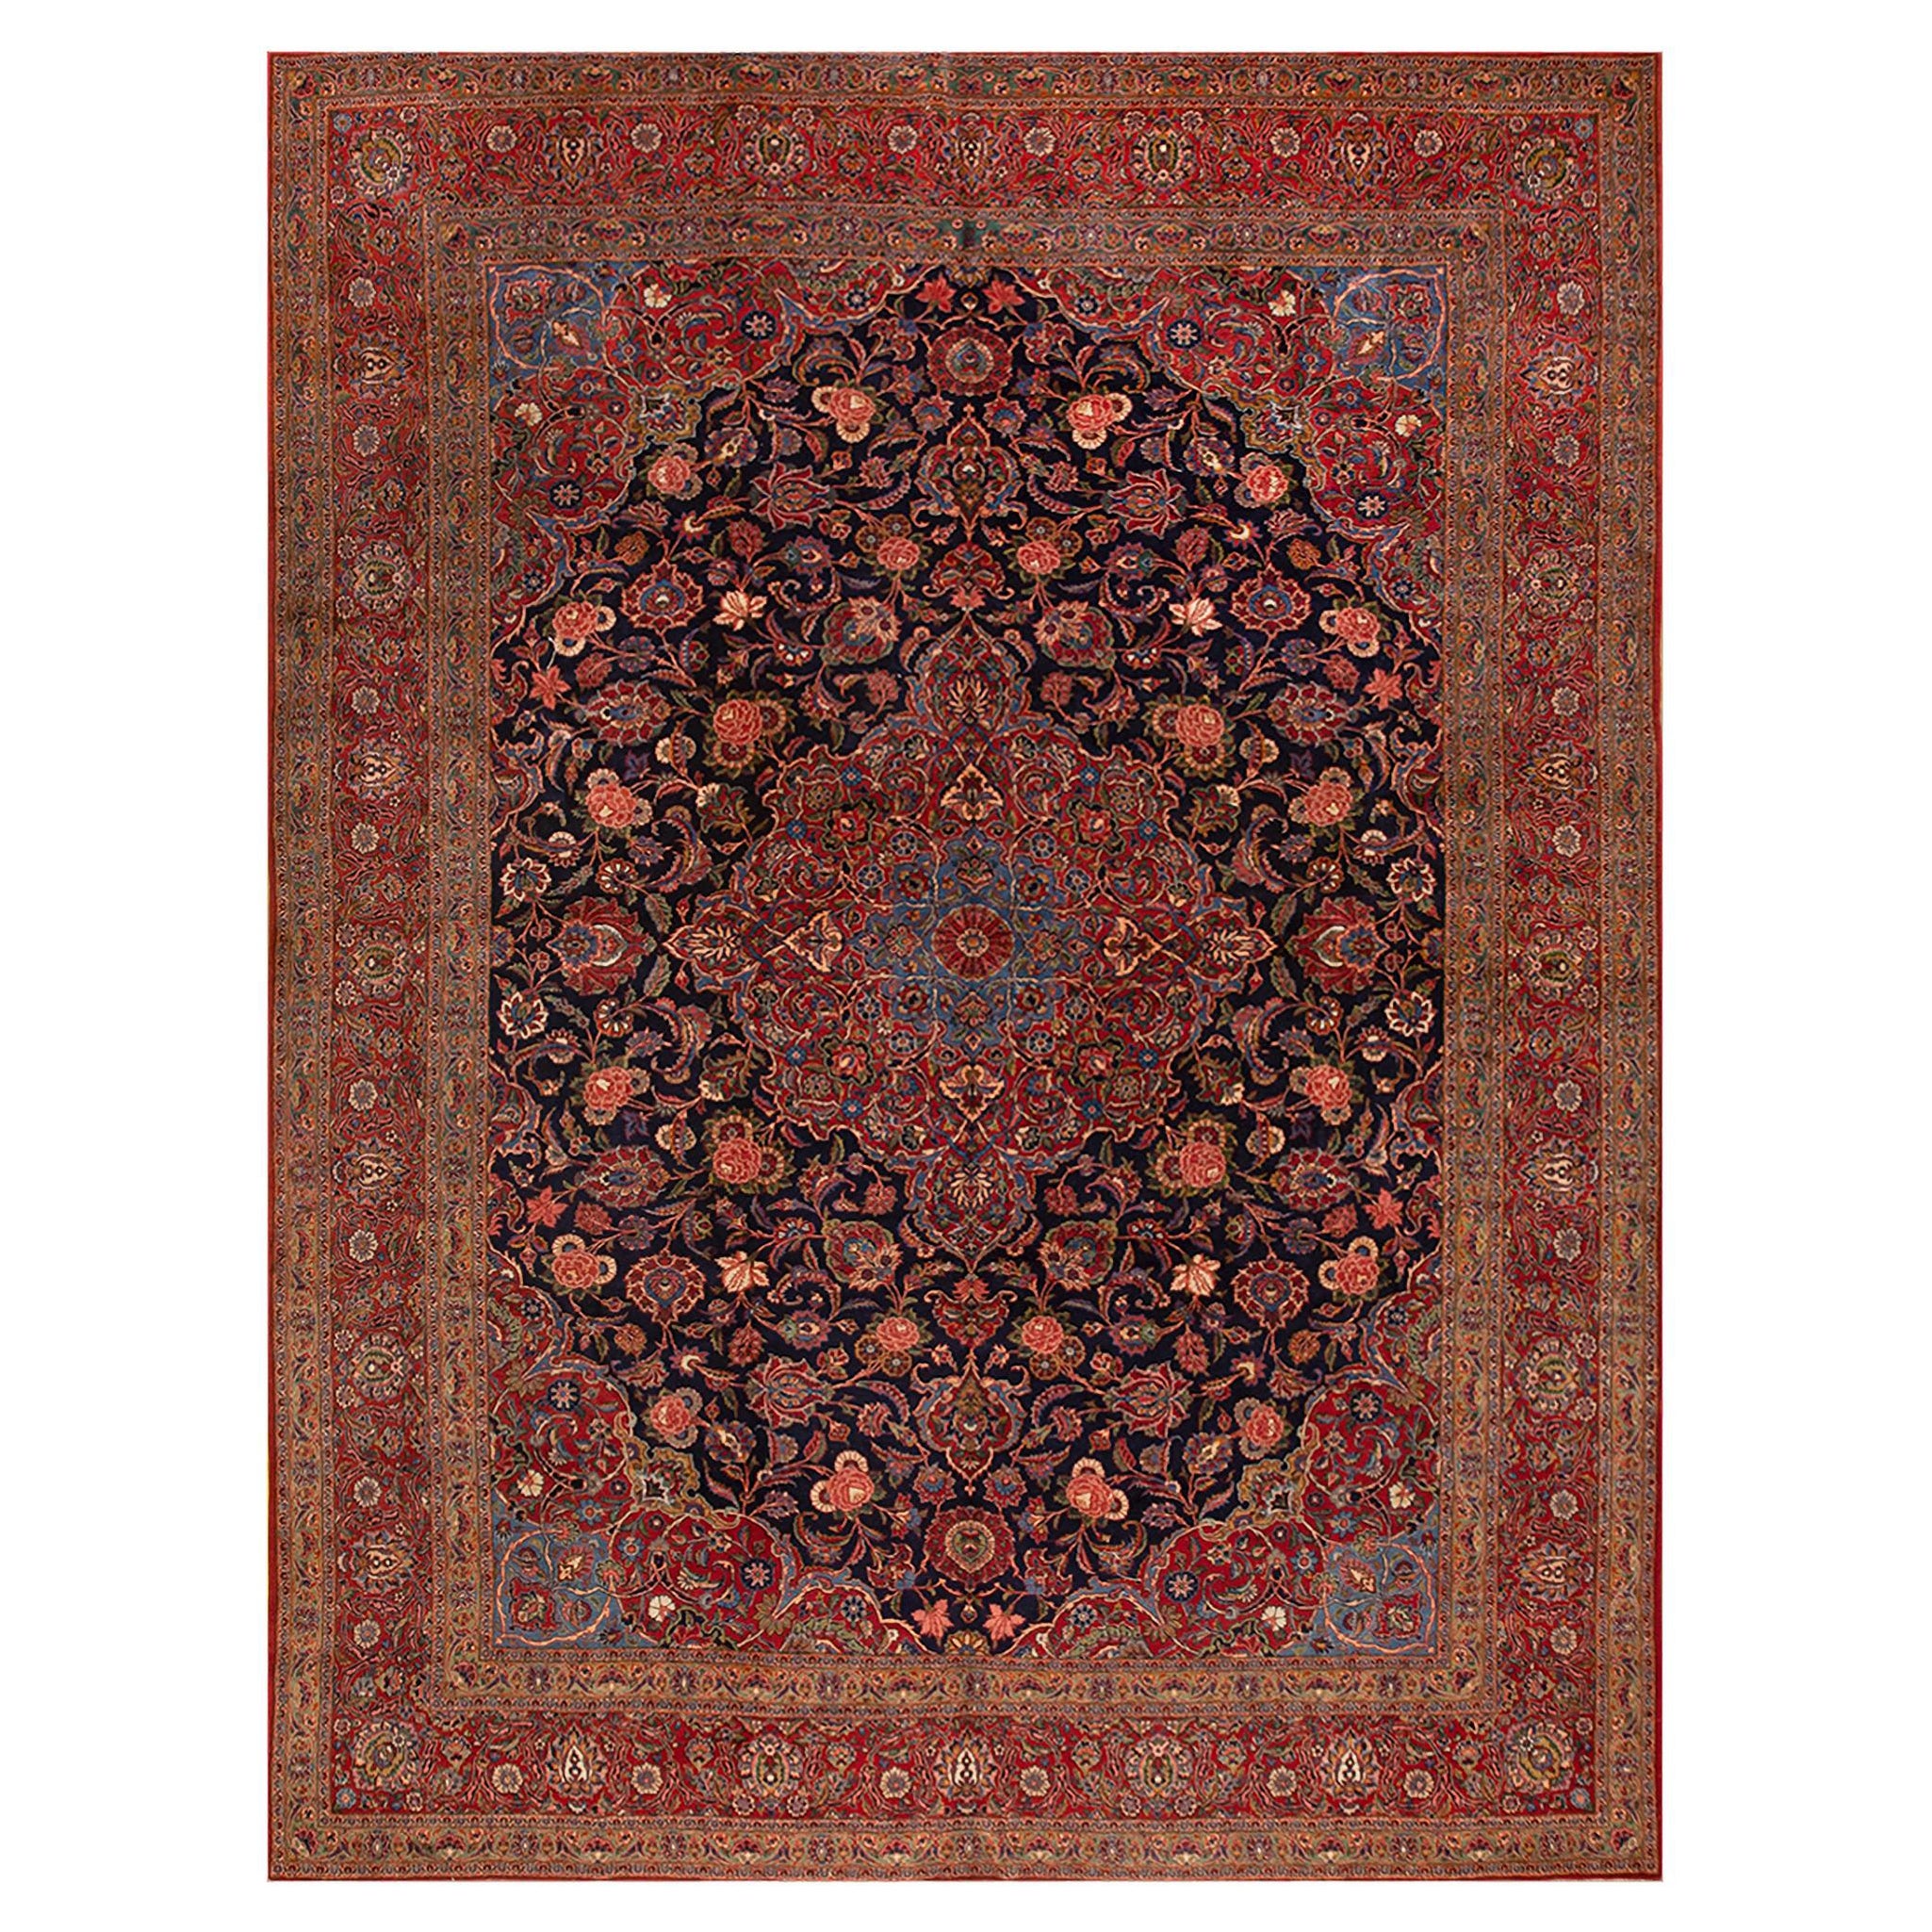 Persischer Kashan-Teppich aus den 1930er Jahren ( 10' 4'' x 14' - 315 x 425 cm)